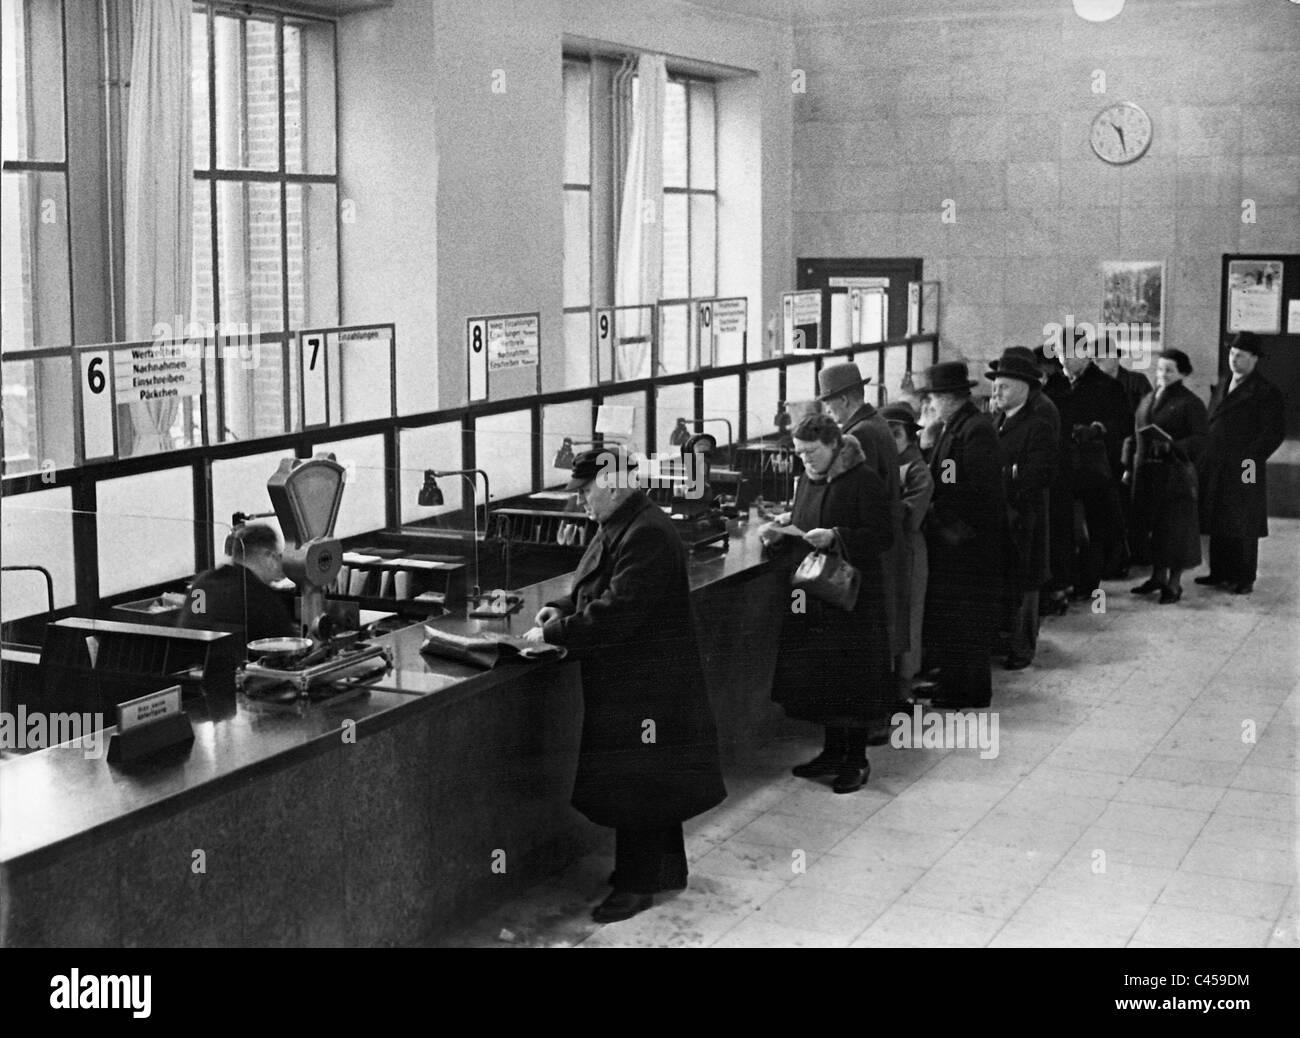 Bureau de poste de Berlin, 1936 Banque D'Images